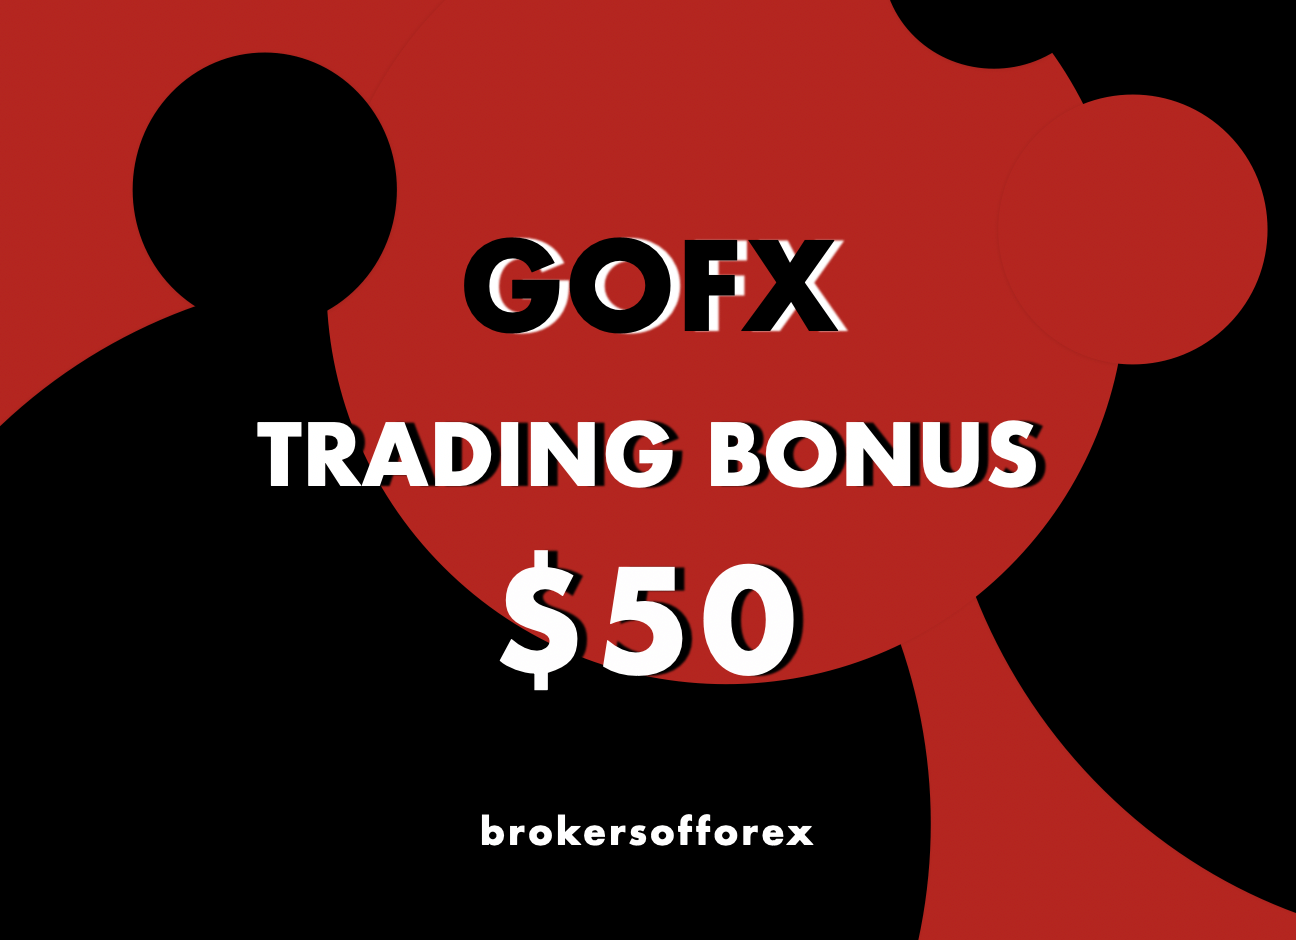 GOFX Trading Bonus